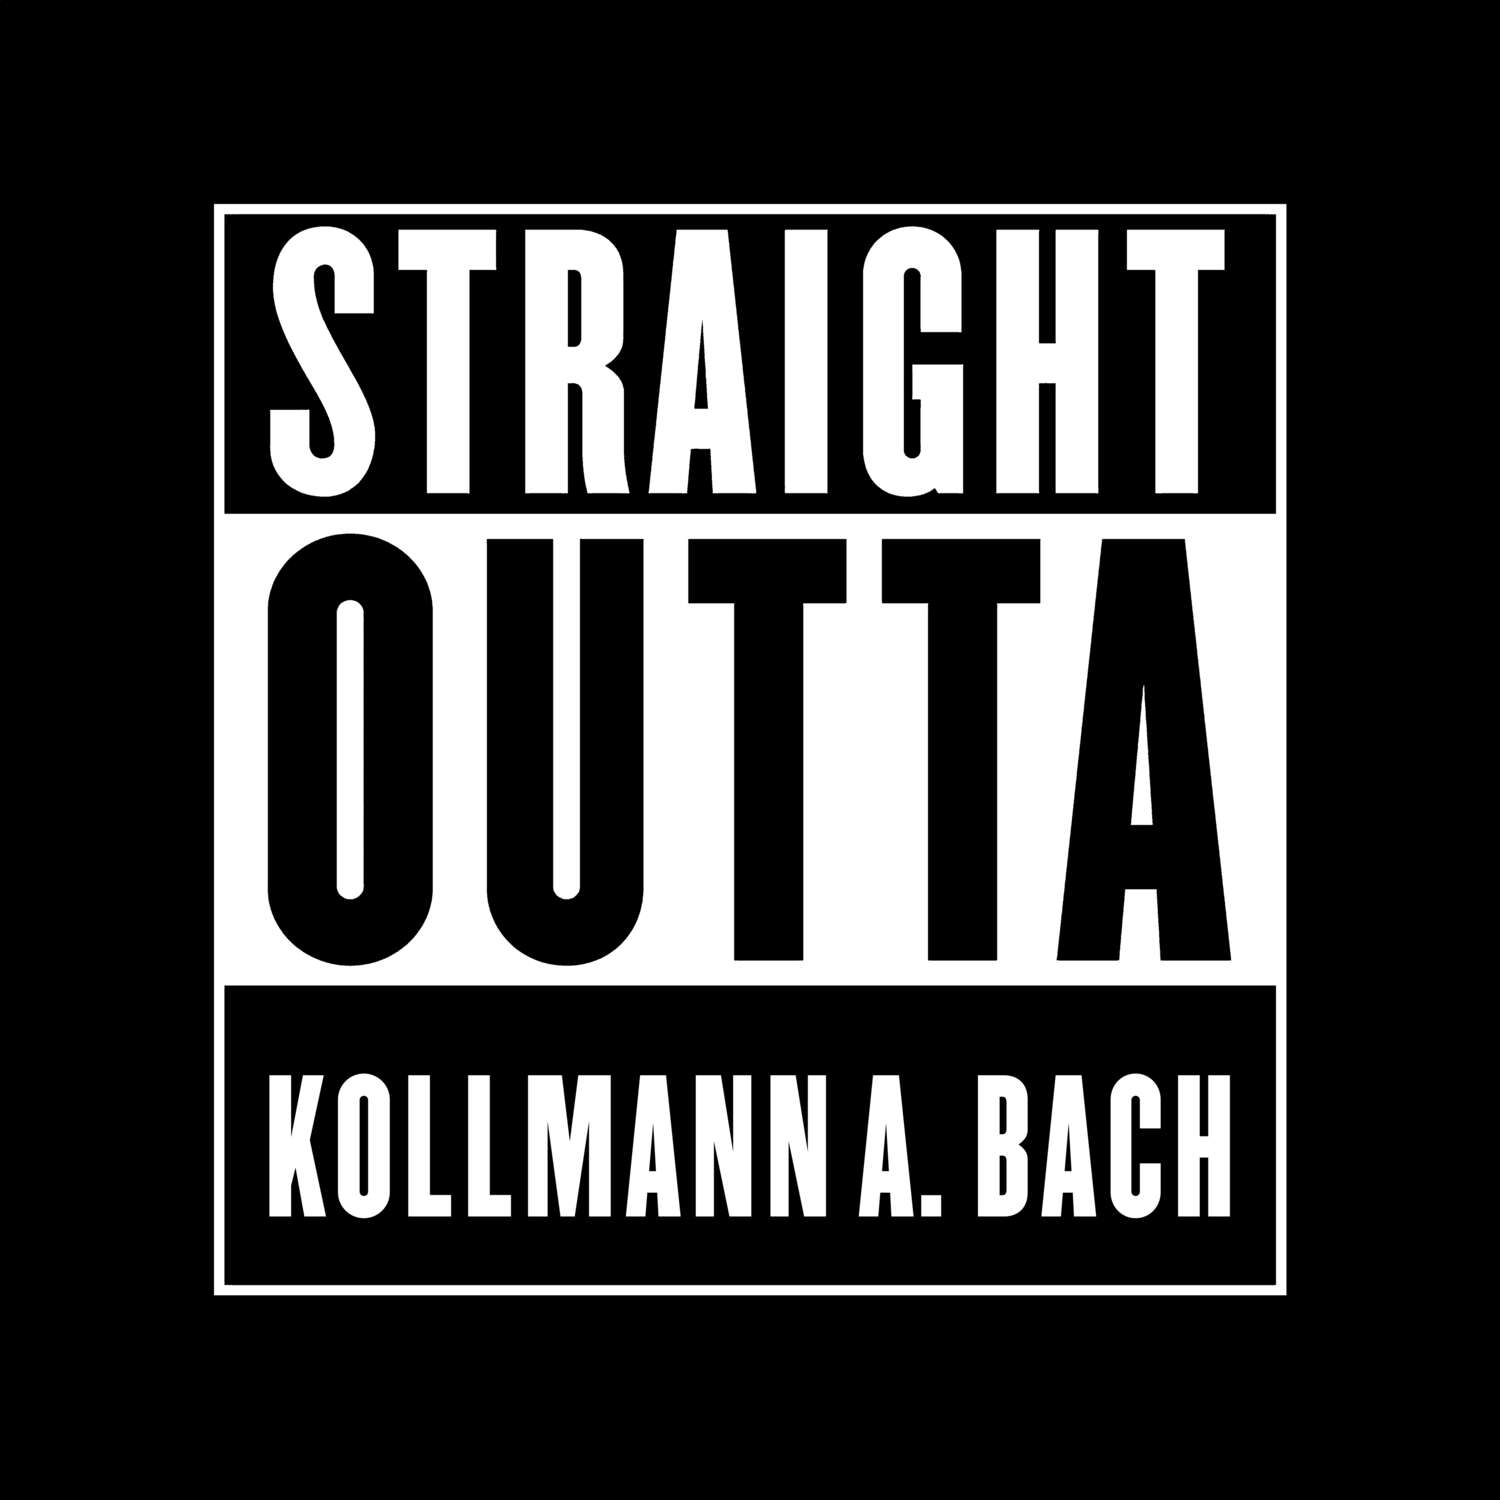 Kollmann a. Bach T-Shirt »Straight Outta«